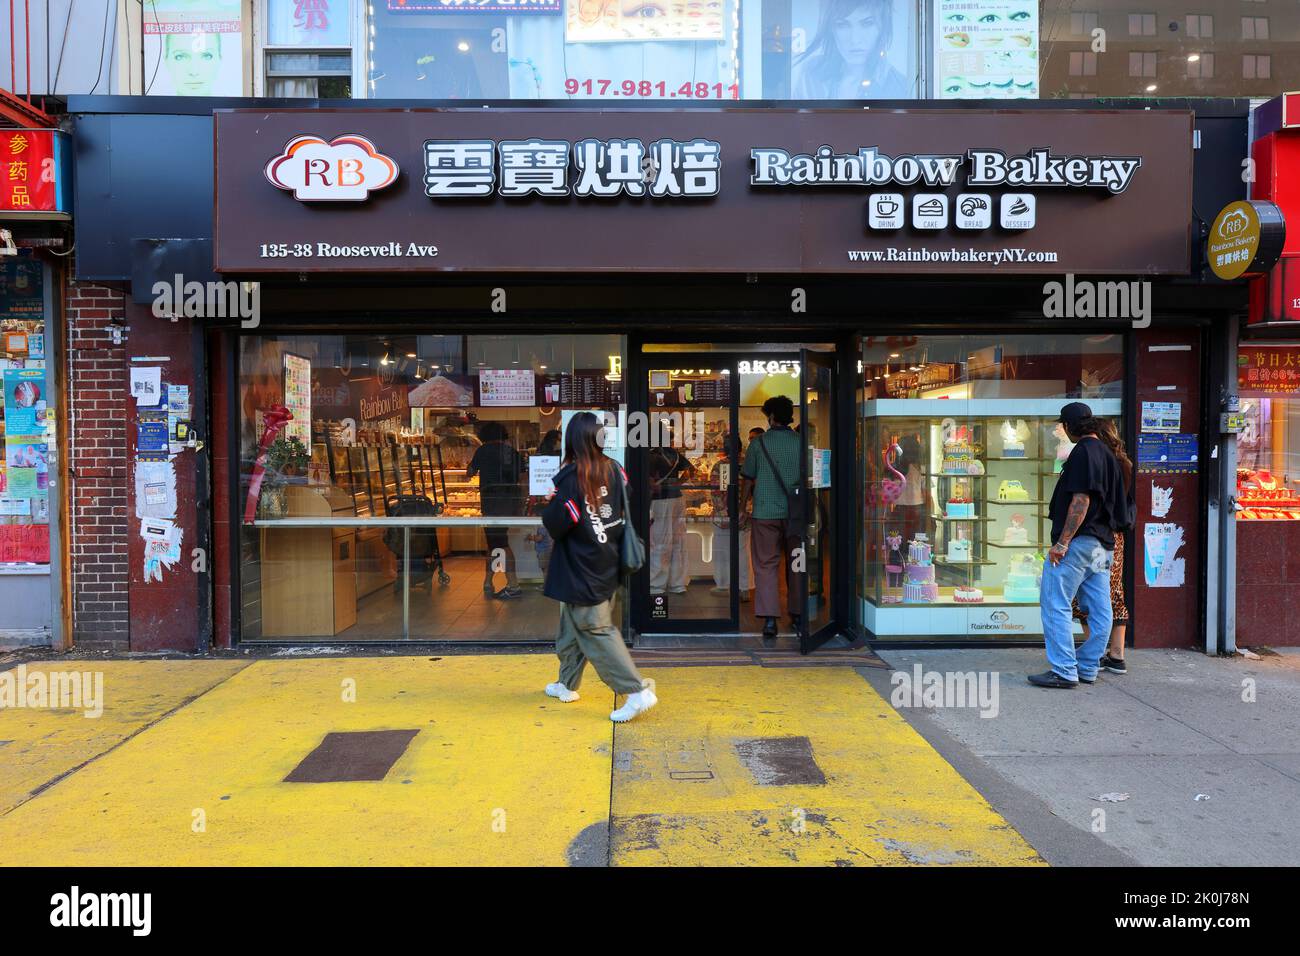 Rainbow Bakery 雲寶餅屋, 135-38 Roosevelt Ave, Queens, Nueva York. Foto del escaparate de Nueva York de una cadena de tiendas de panadería china en el centro de Flushing. Foto de stock